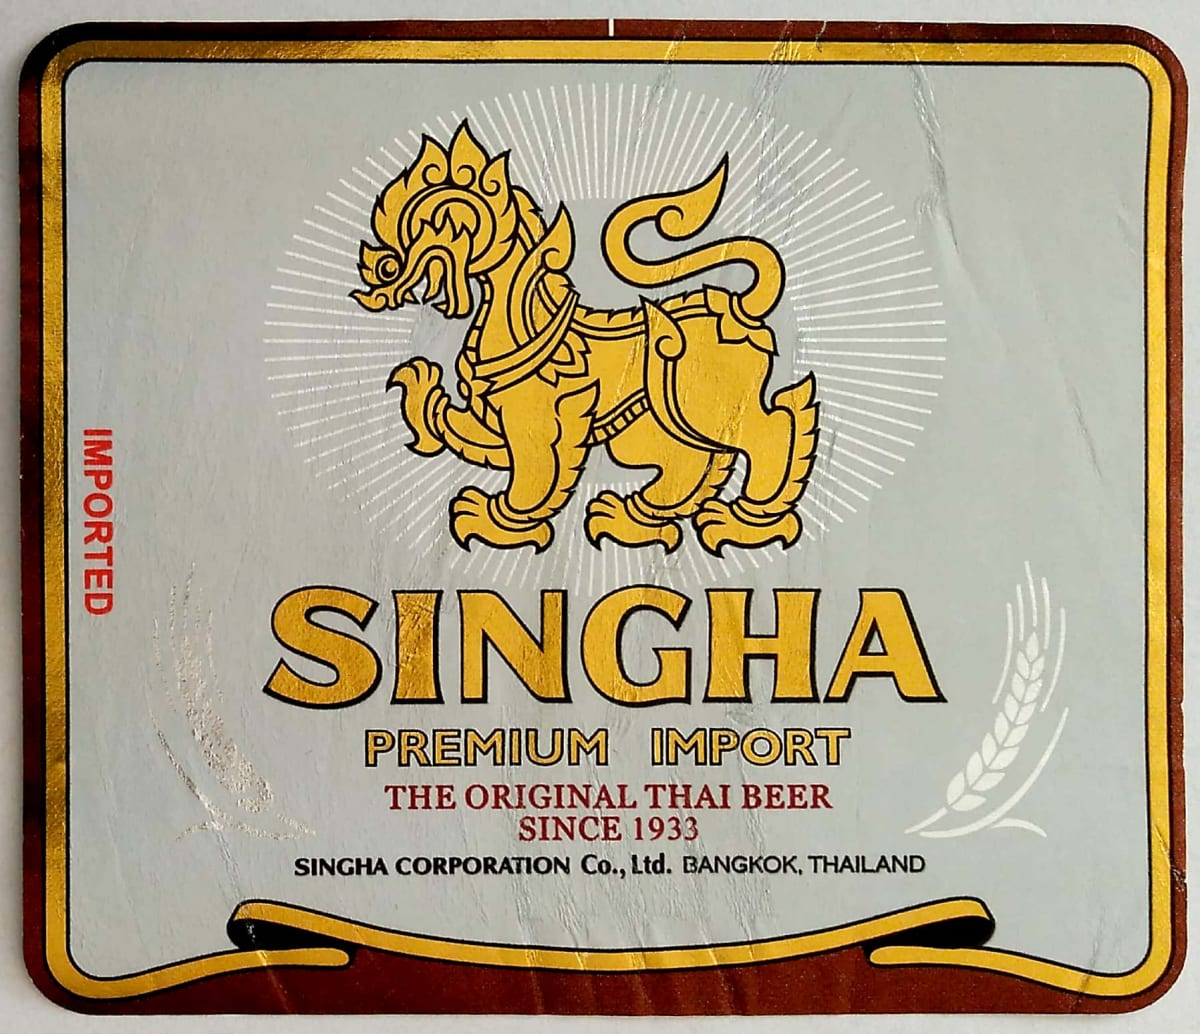 Singha premium import